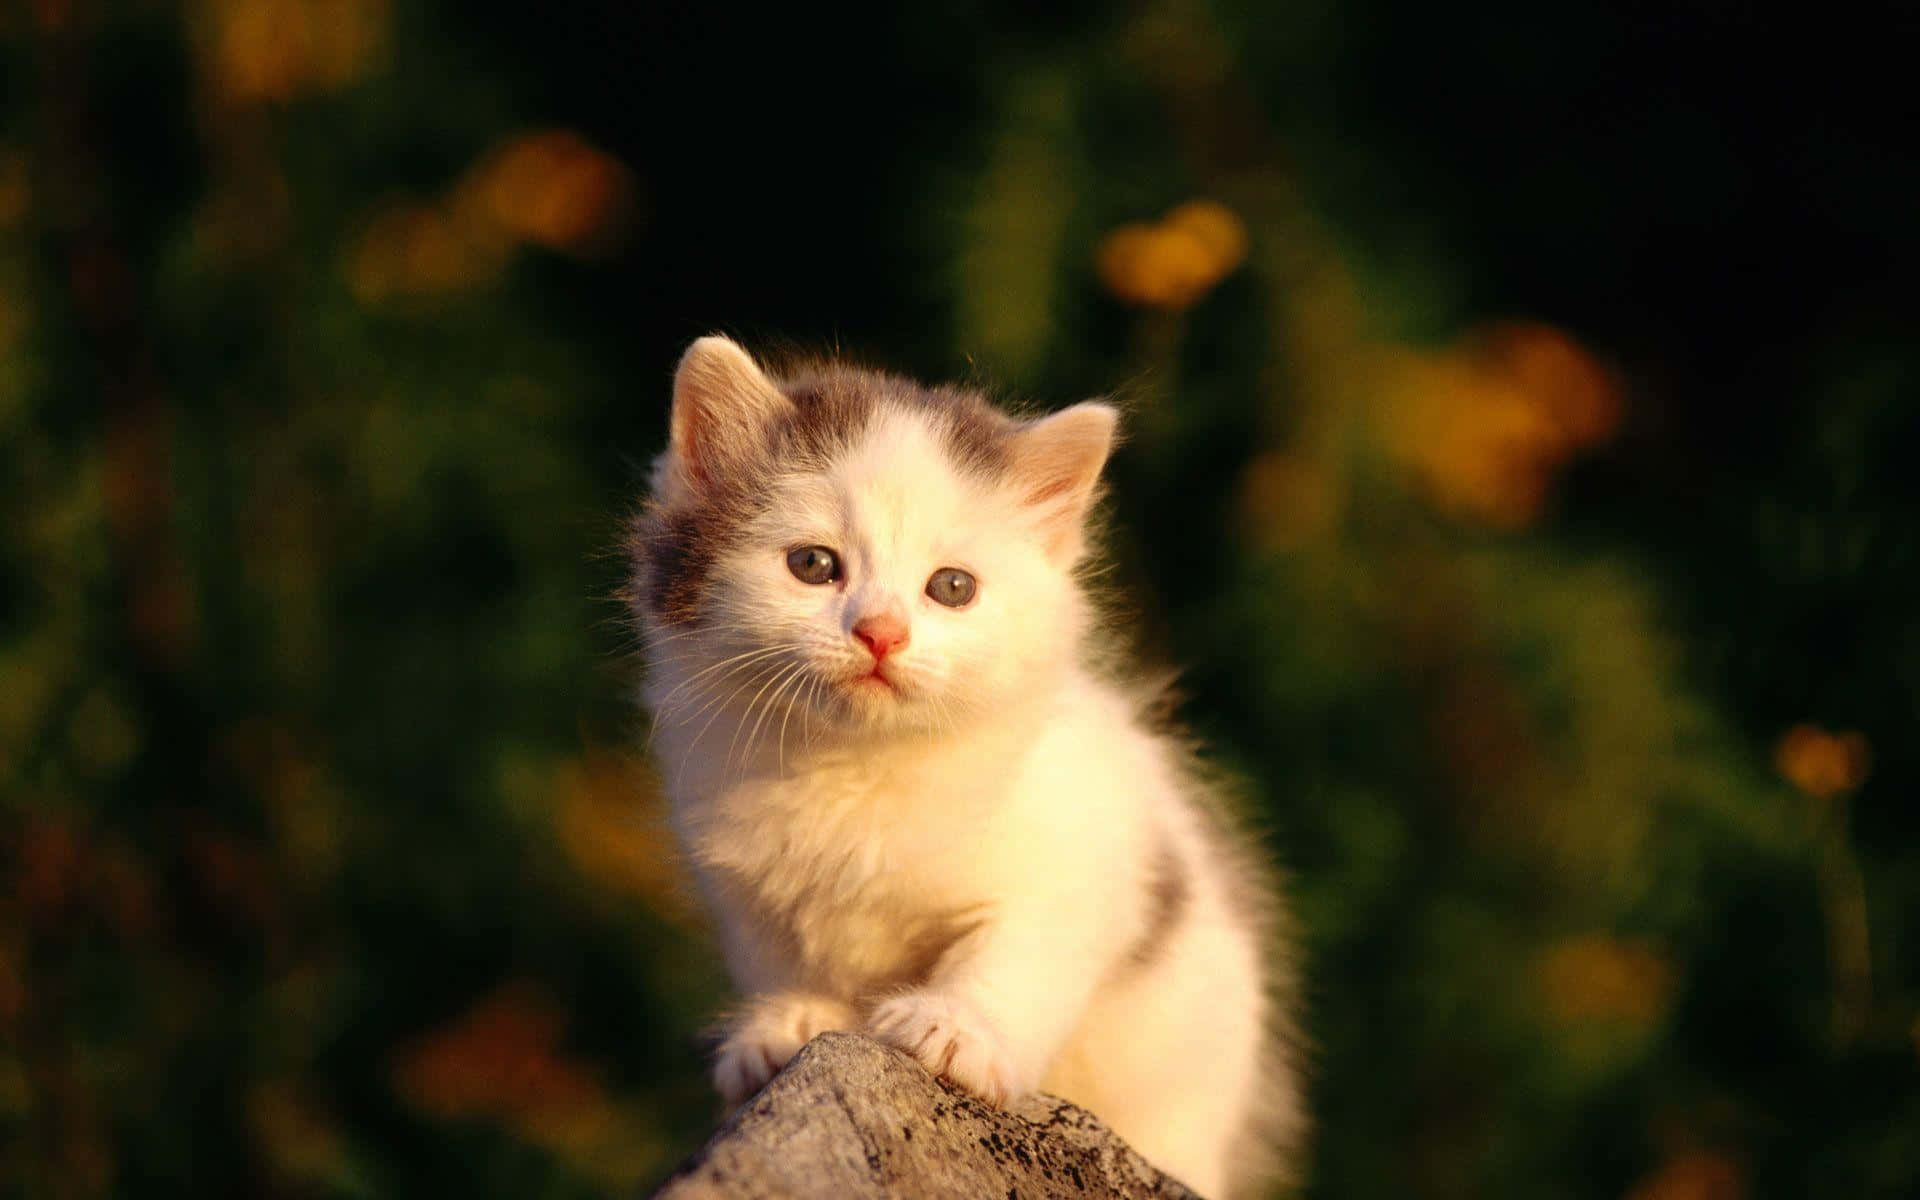 Sødtbillede Af En Hvid Tyrkisk Kat.